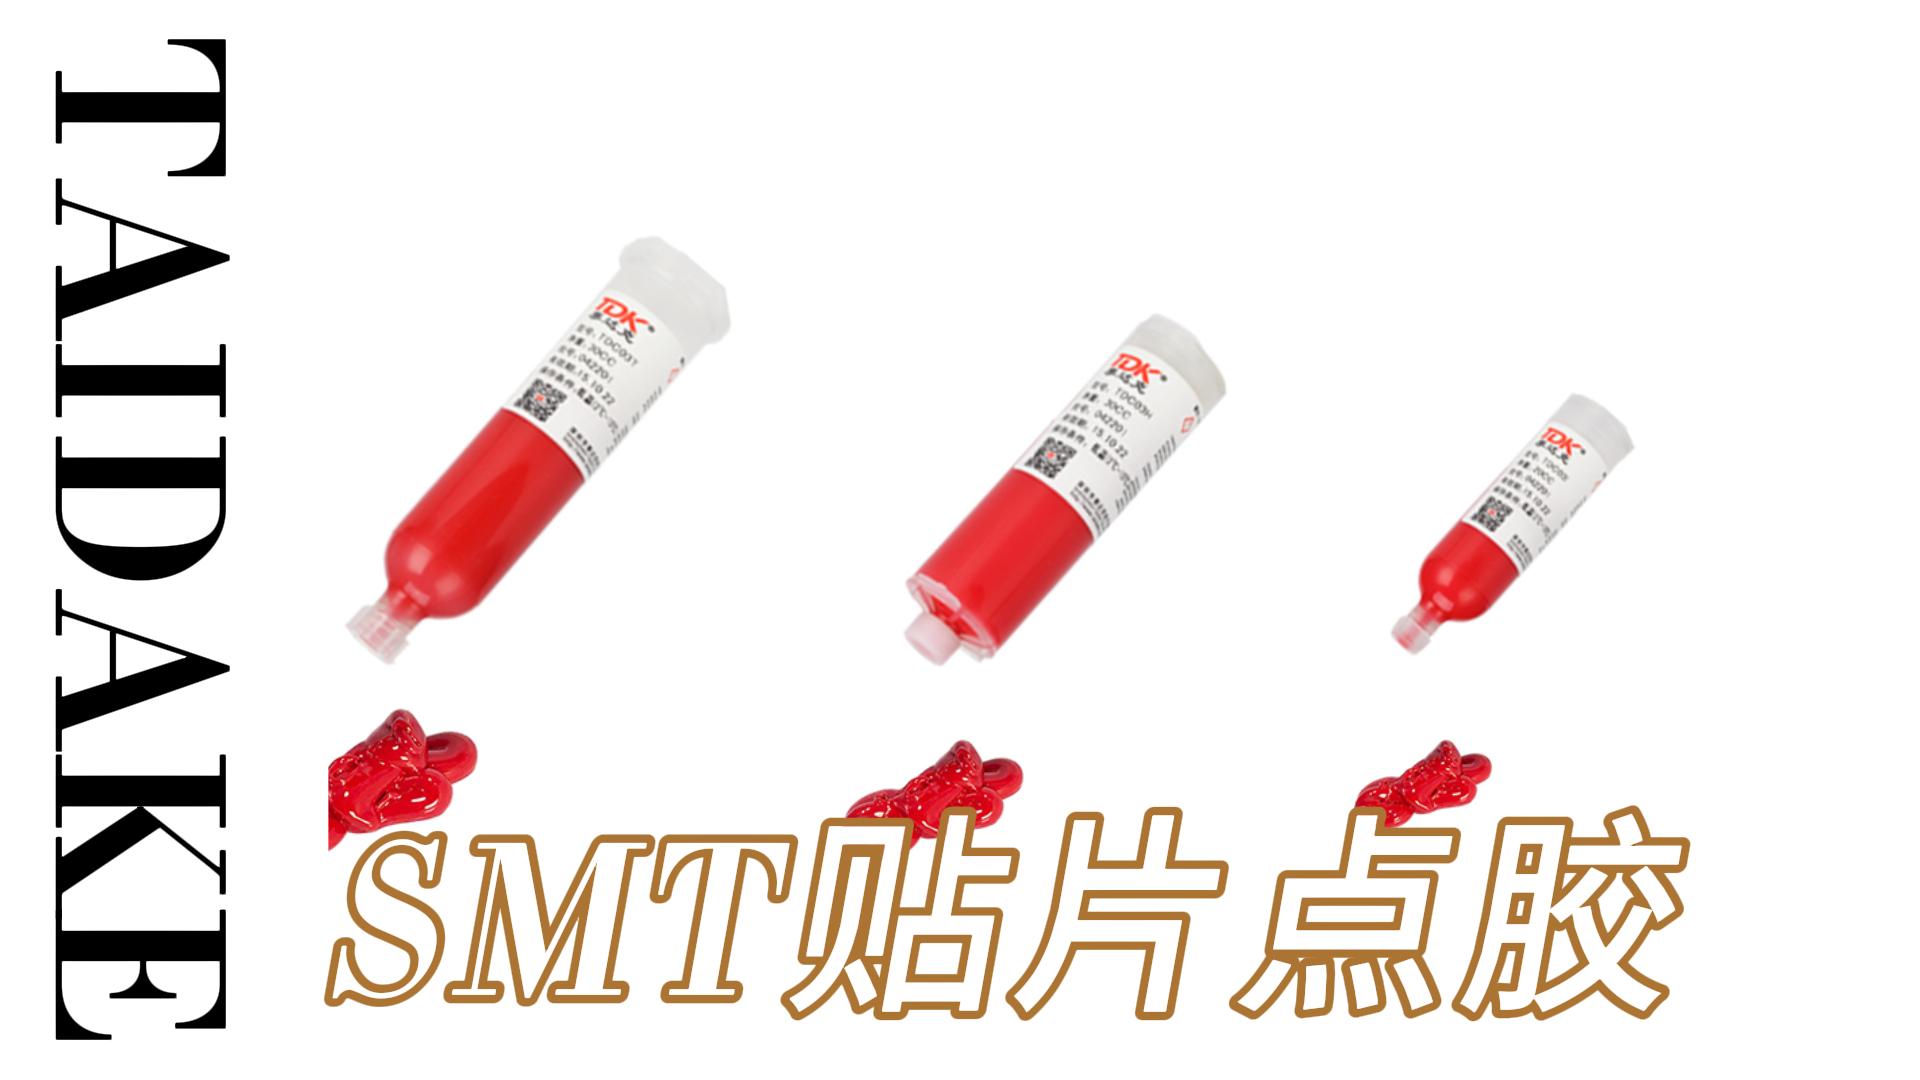 SMT红胶点胶适用于喷胶机点胶机在各个领域了广泛应用#SMT贴片#胶粘剂
 